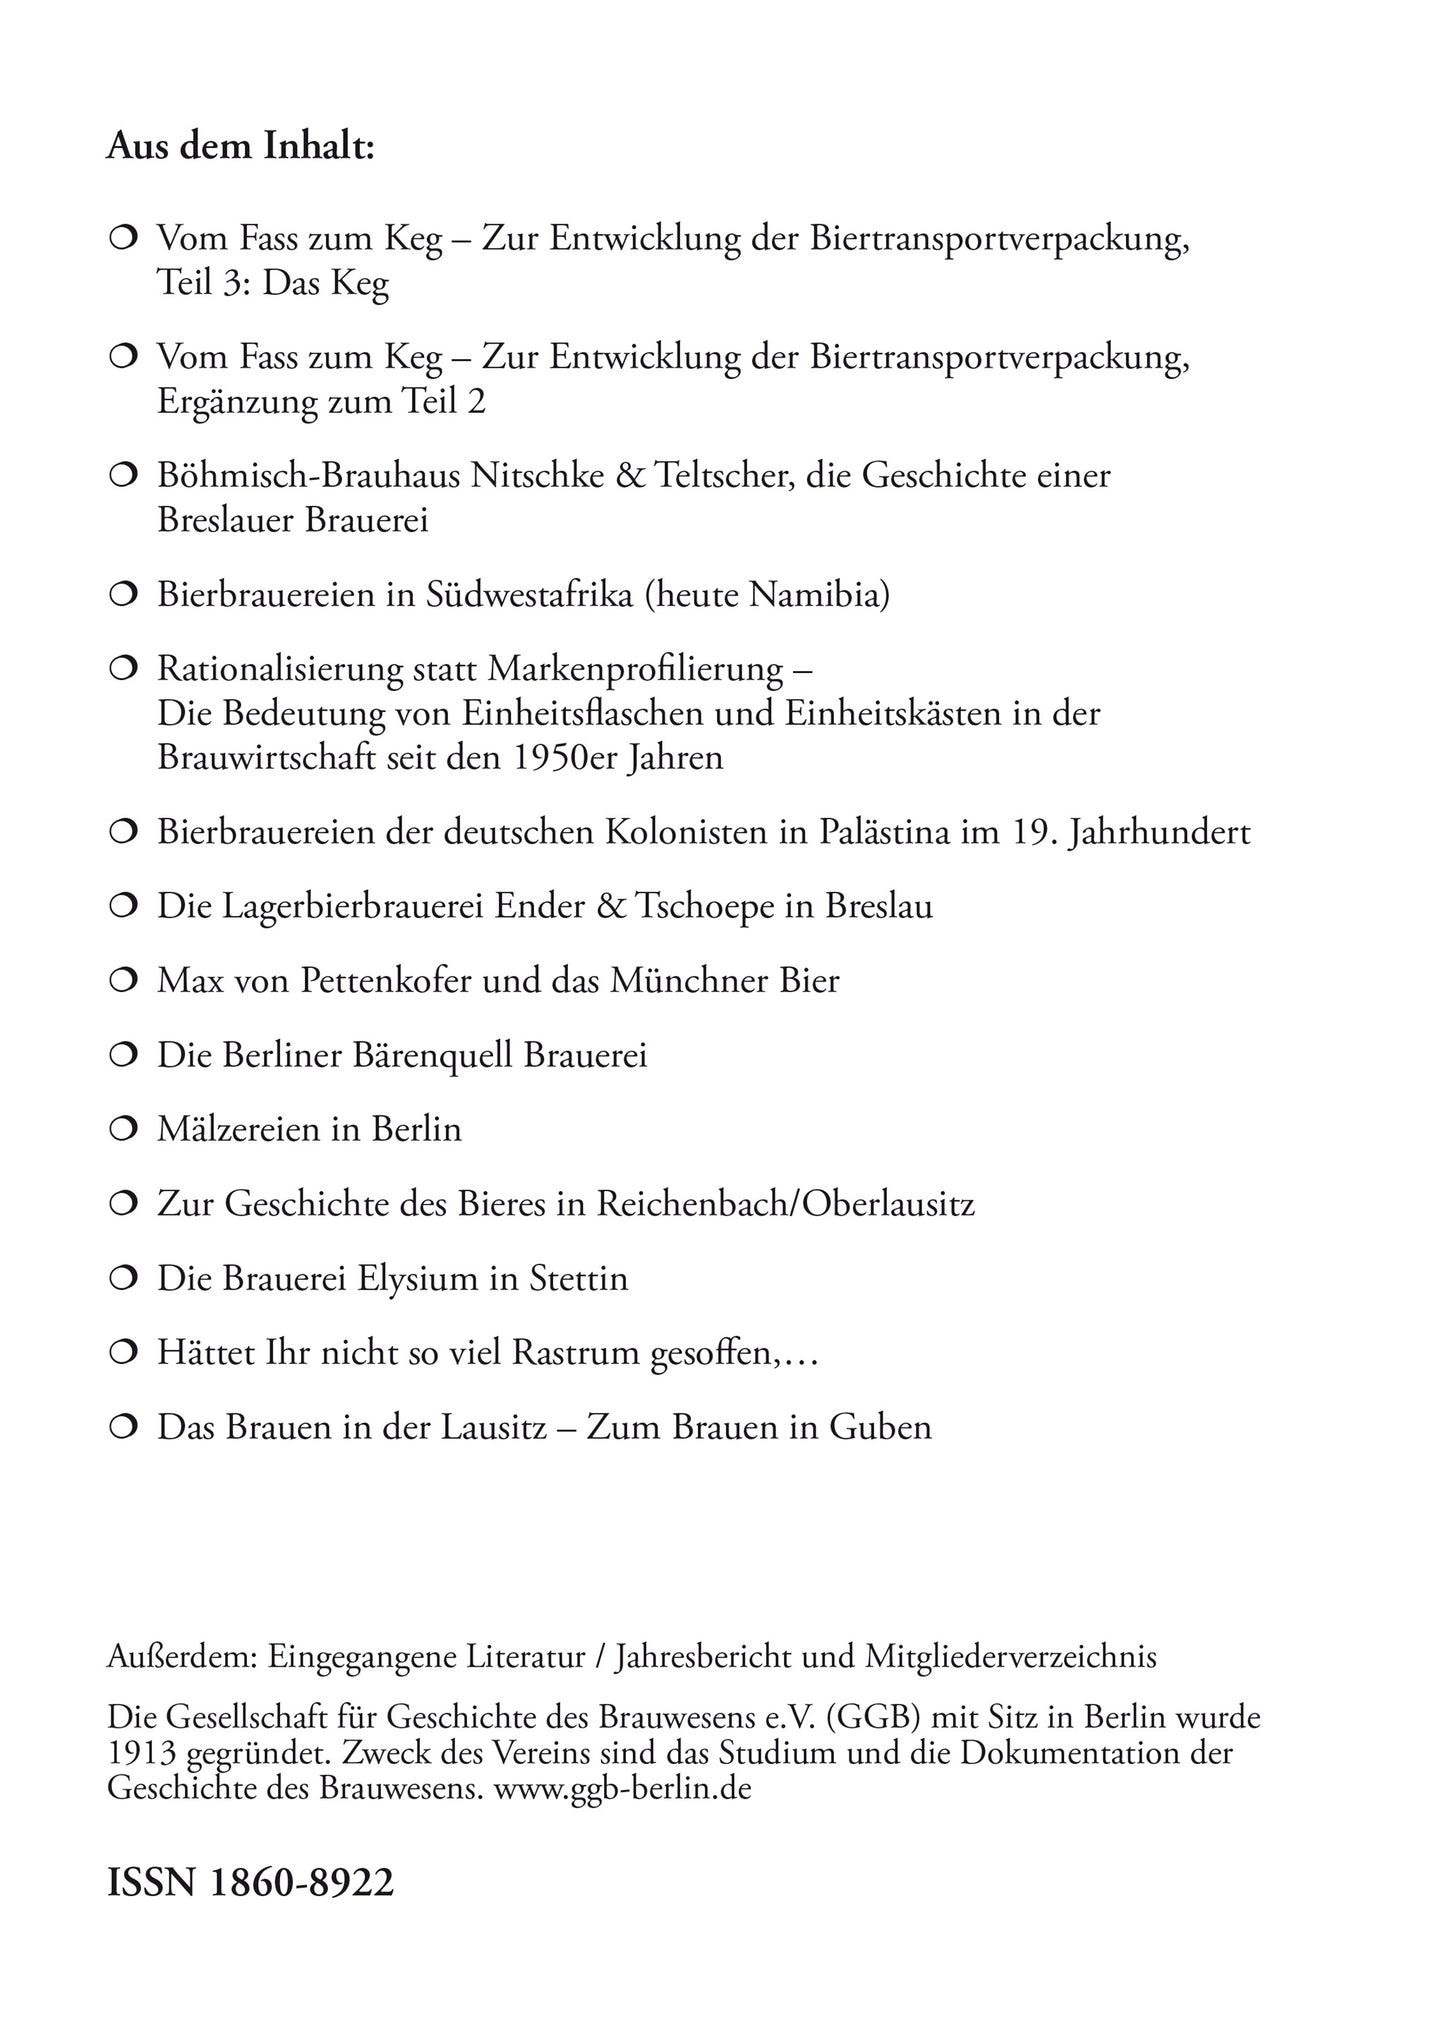 Jahrbuch 2021 der Gesellschaft für Geschichte des Brauwesens e.V. (GGB)